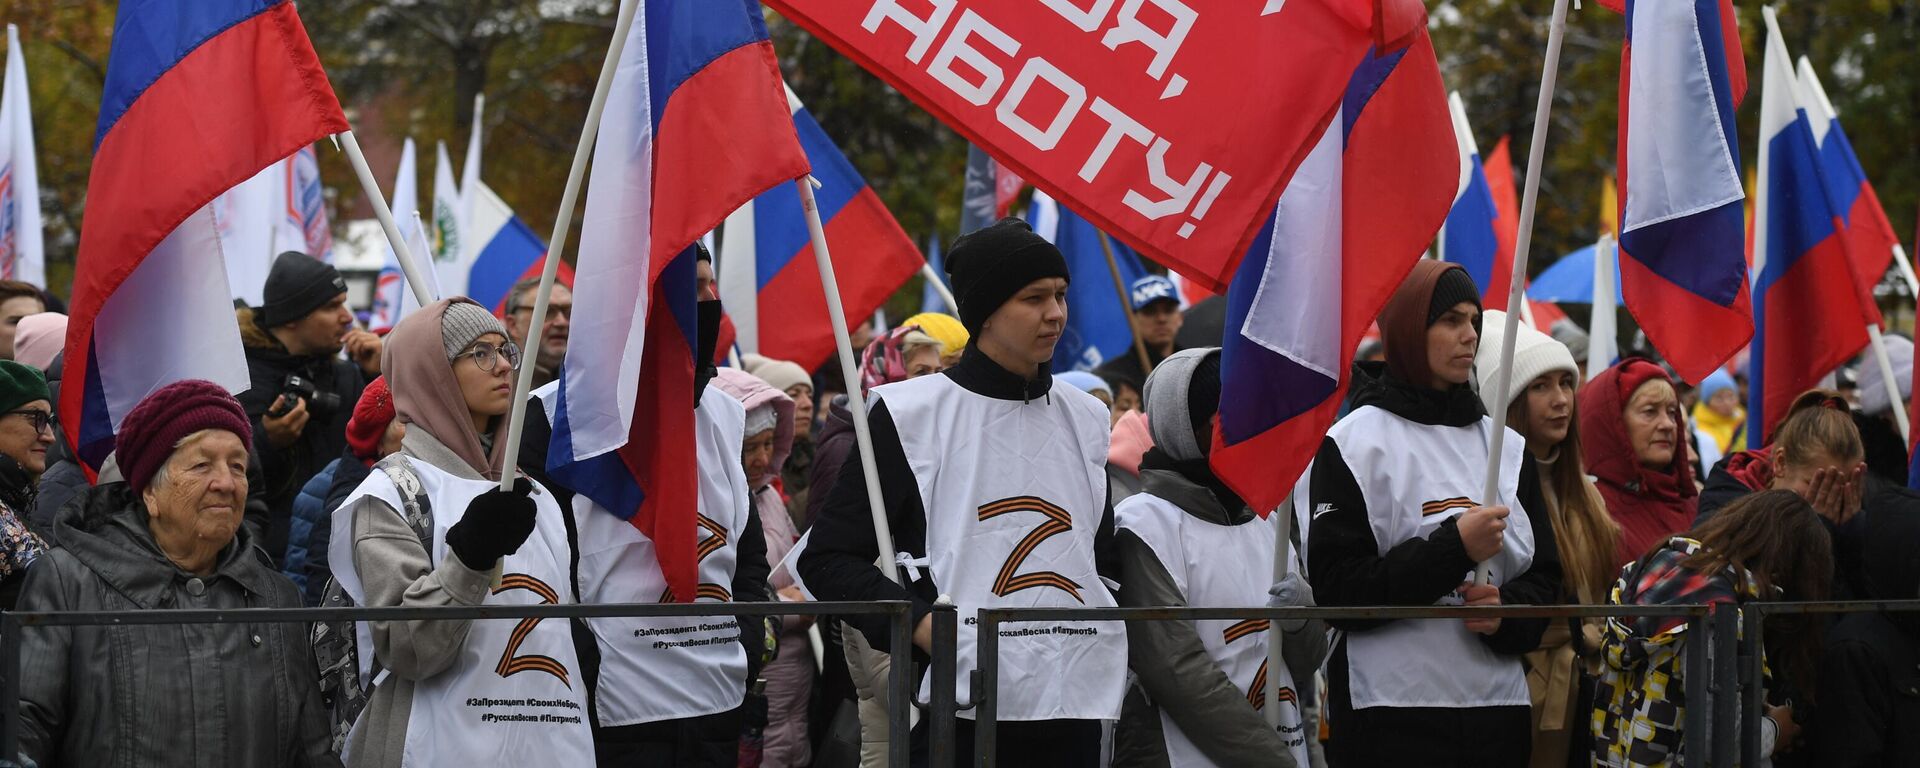 Pessoas com bandeiras durante concerto de comemoração da adesão à Rússia das repúblicas populares de Donetsk (RPD) e Lugansk (RPL) e das regiões de Kherson e Zaporozhie, no Parque Central de Novosibirsk, na Rússia, em 30 de setembro de 2022 - Sputnik Brasil, 1920, 30.09.2022